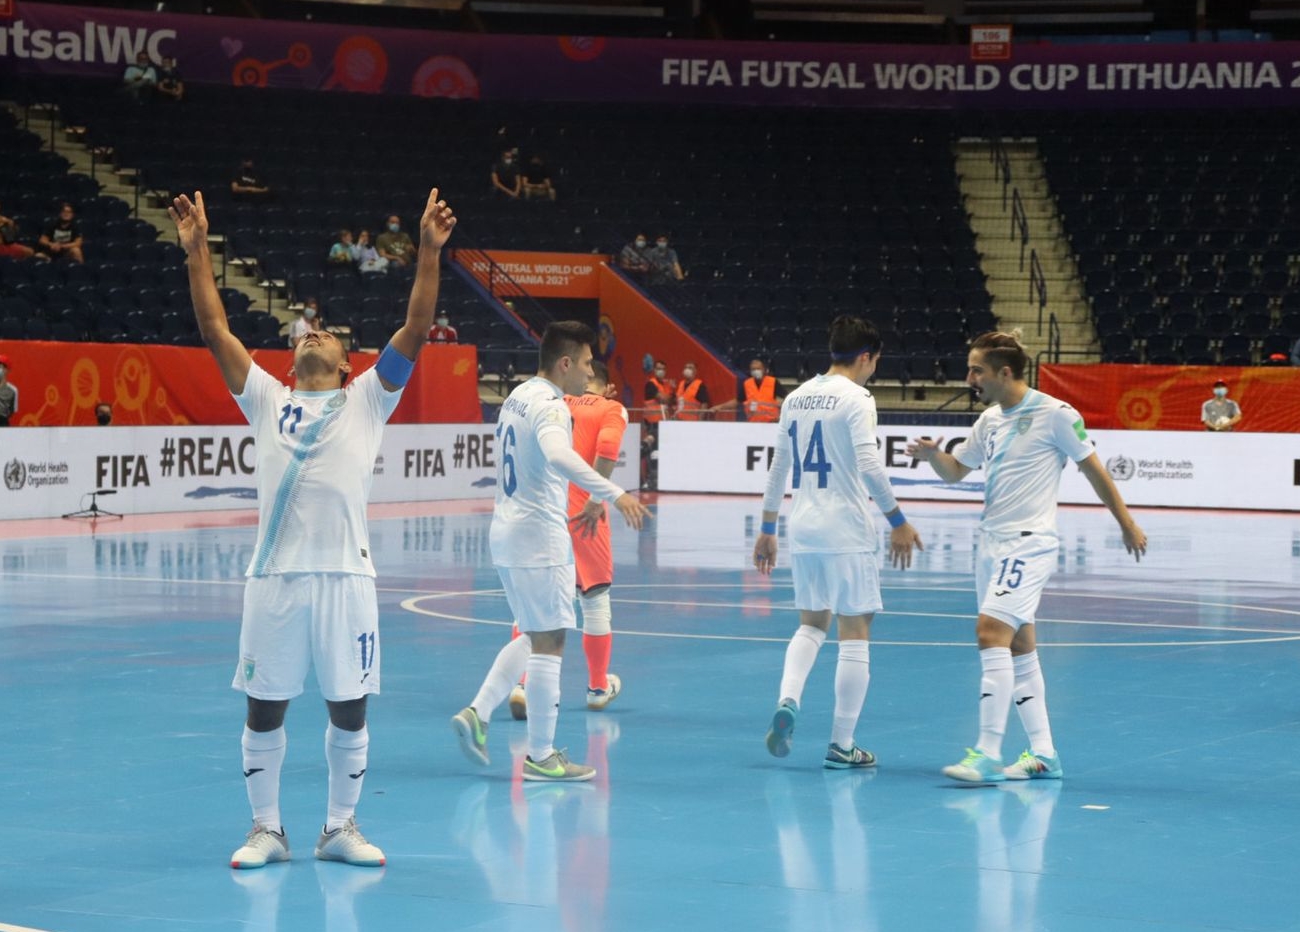 Ninguna combinación de resultados les ayudó; Guatemala termina su participación en la Copa del Mundo de Futsal Lituania 2021